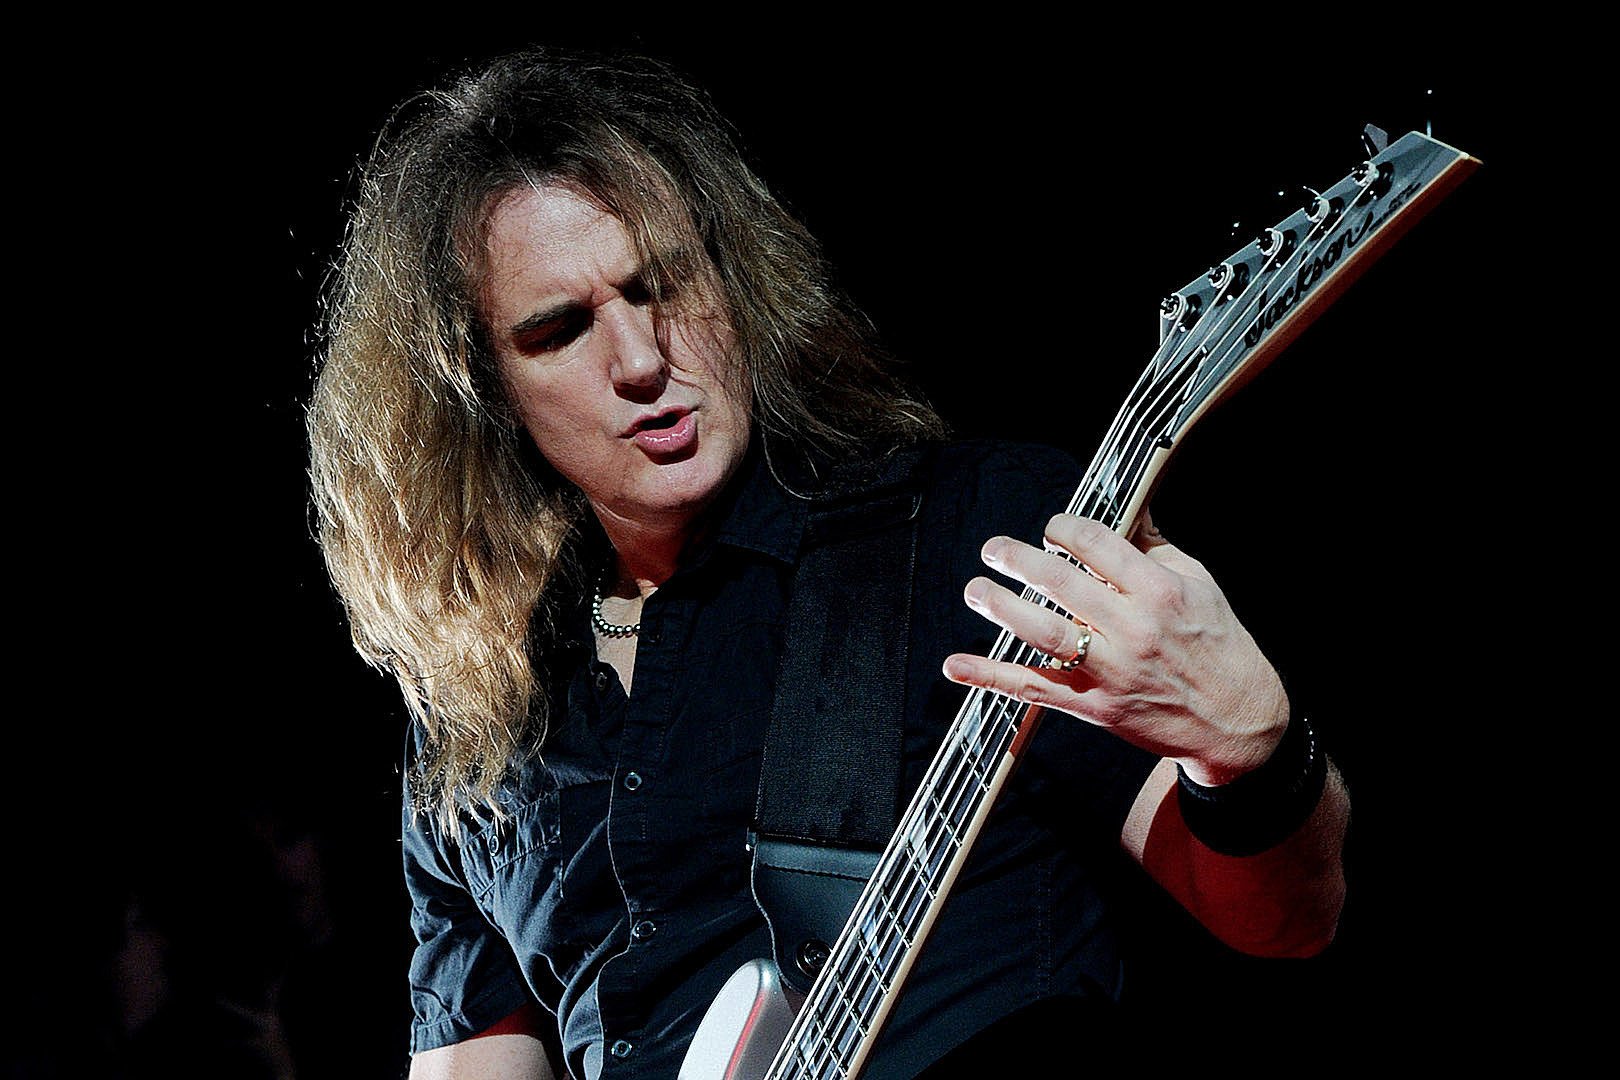  Basistul David Ellefson, acuzat de comportament sexual neadecvat, dat afară din trupa Megadeth